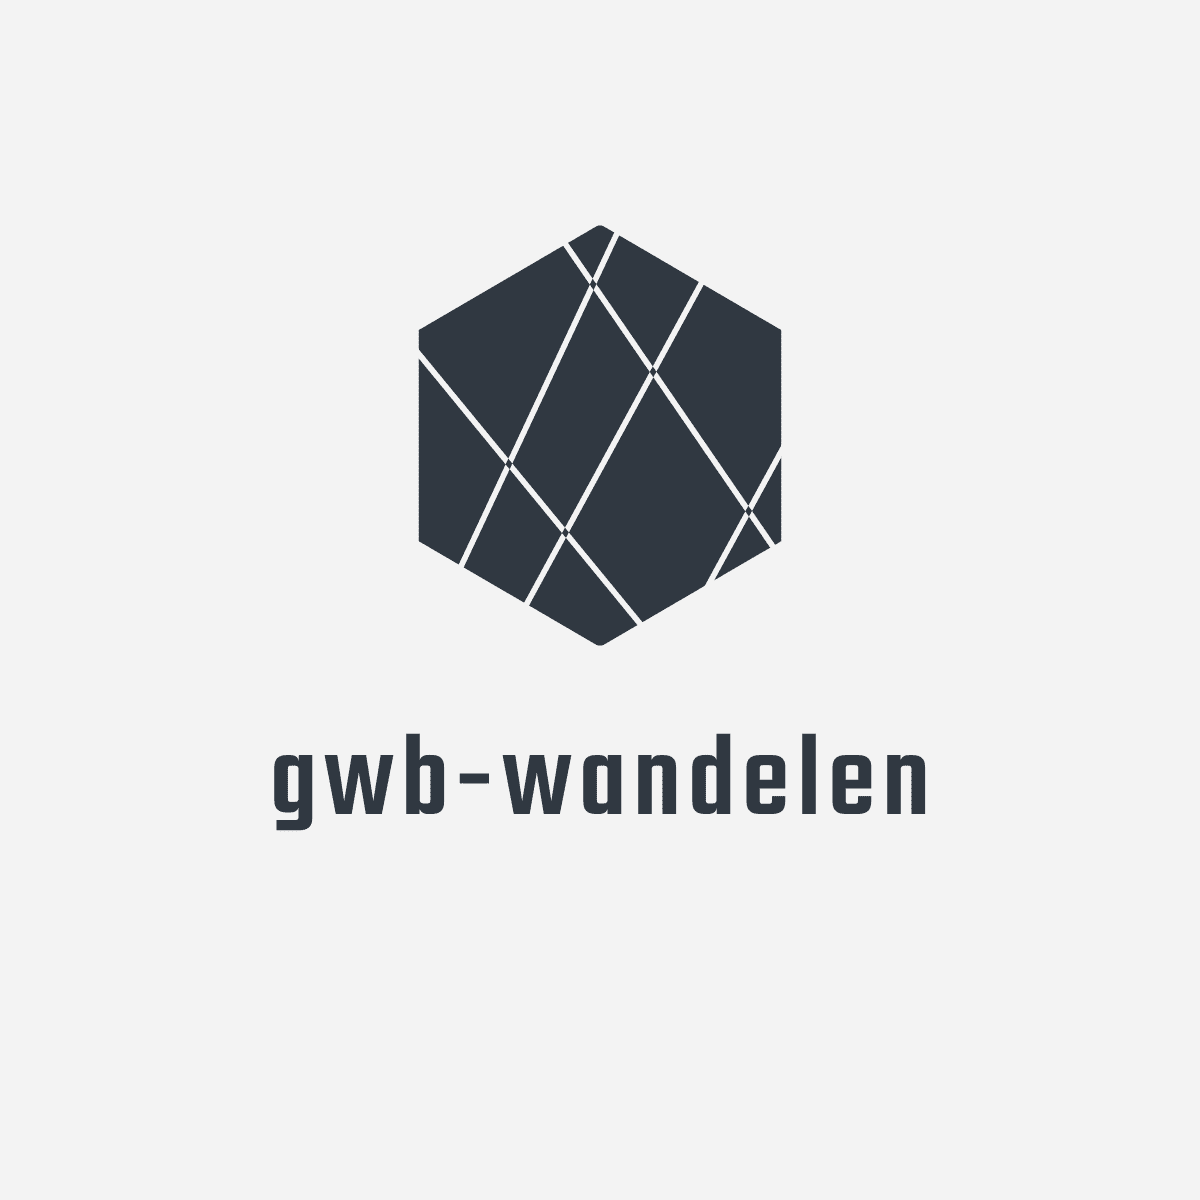 Gwb-wandelen